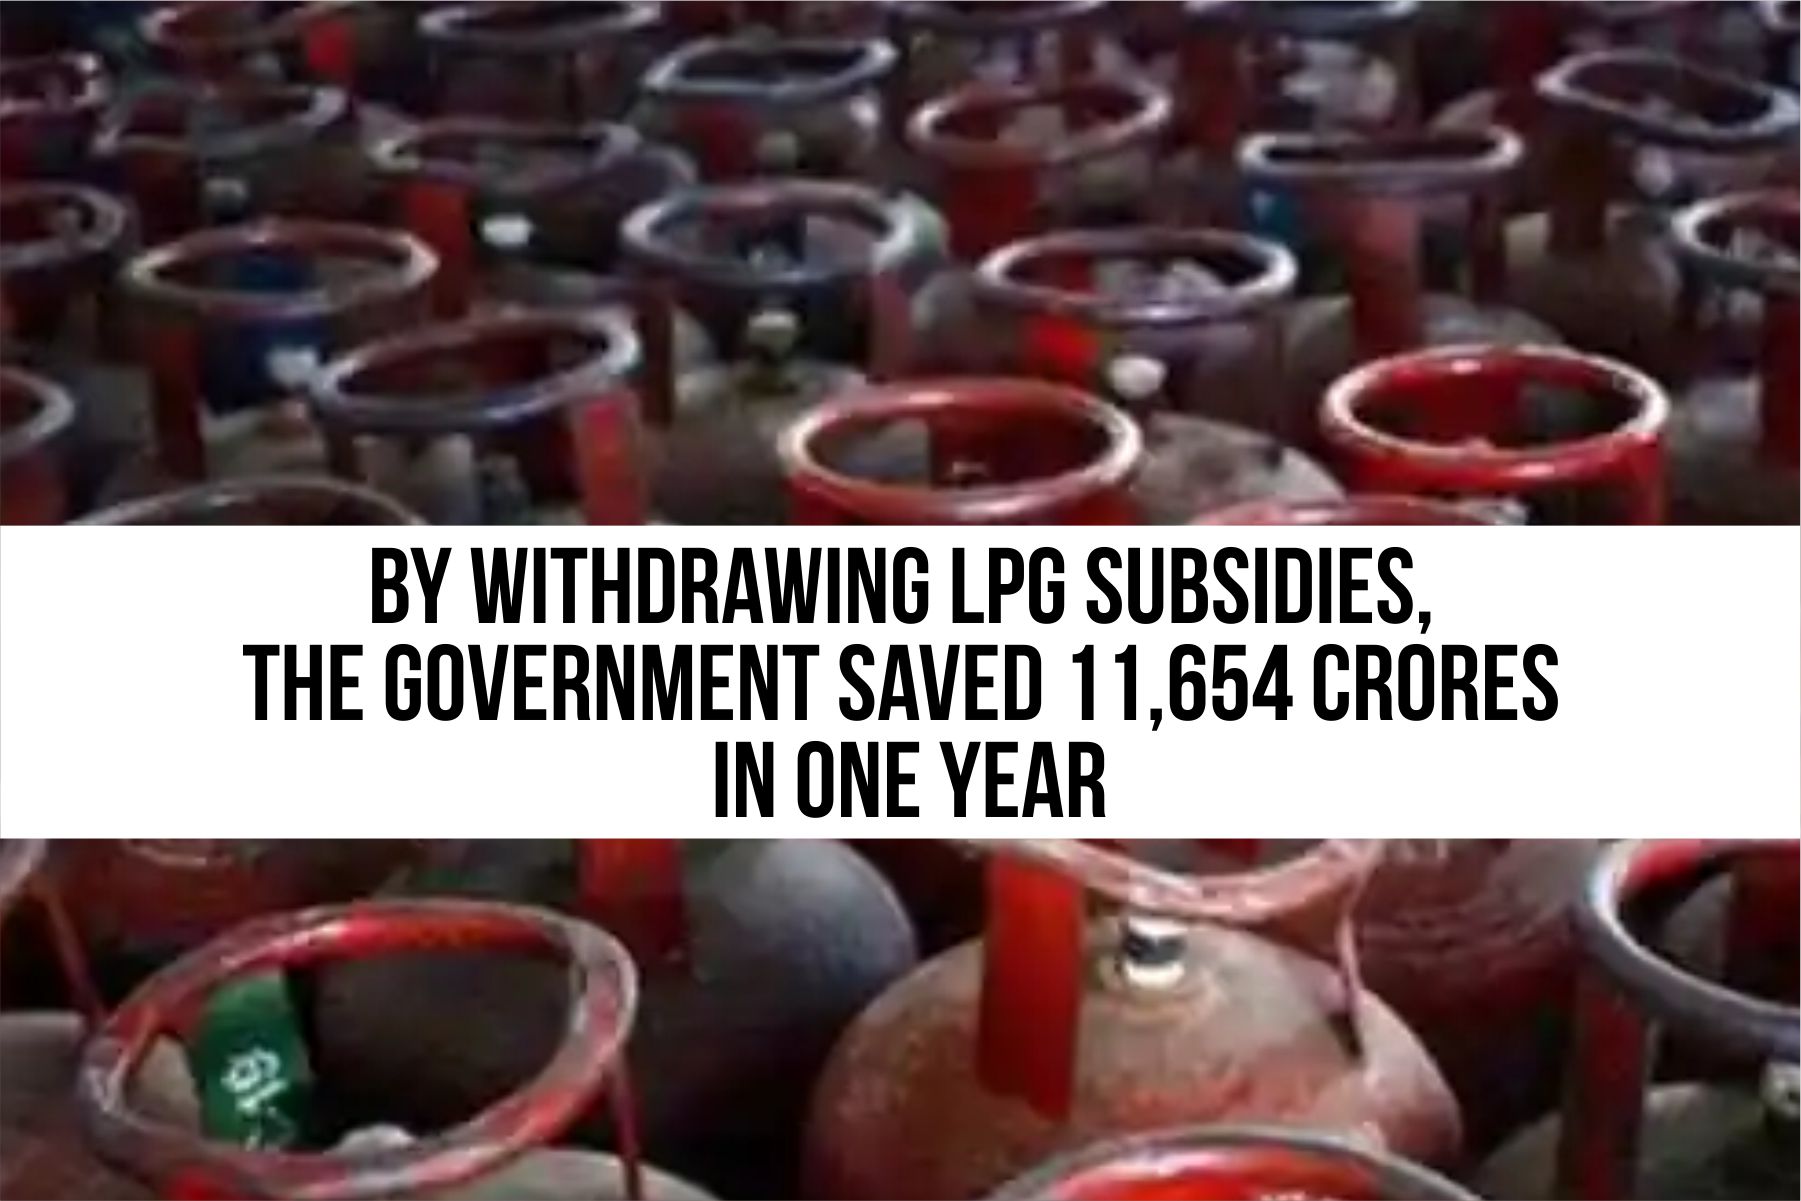 LPG subsidy